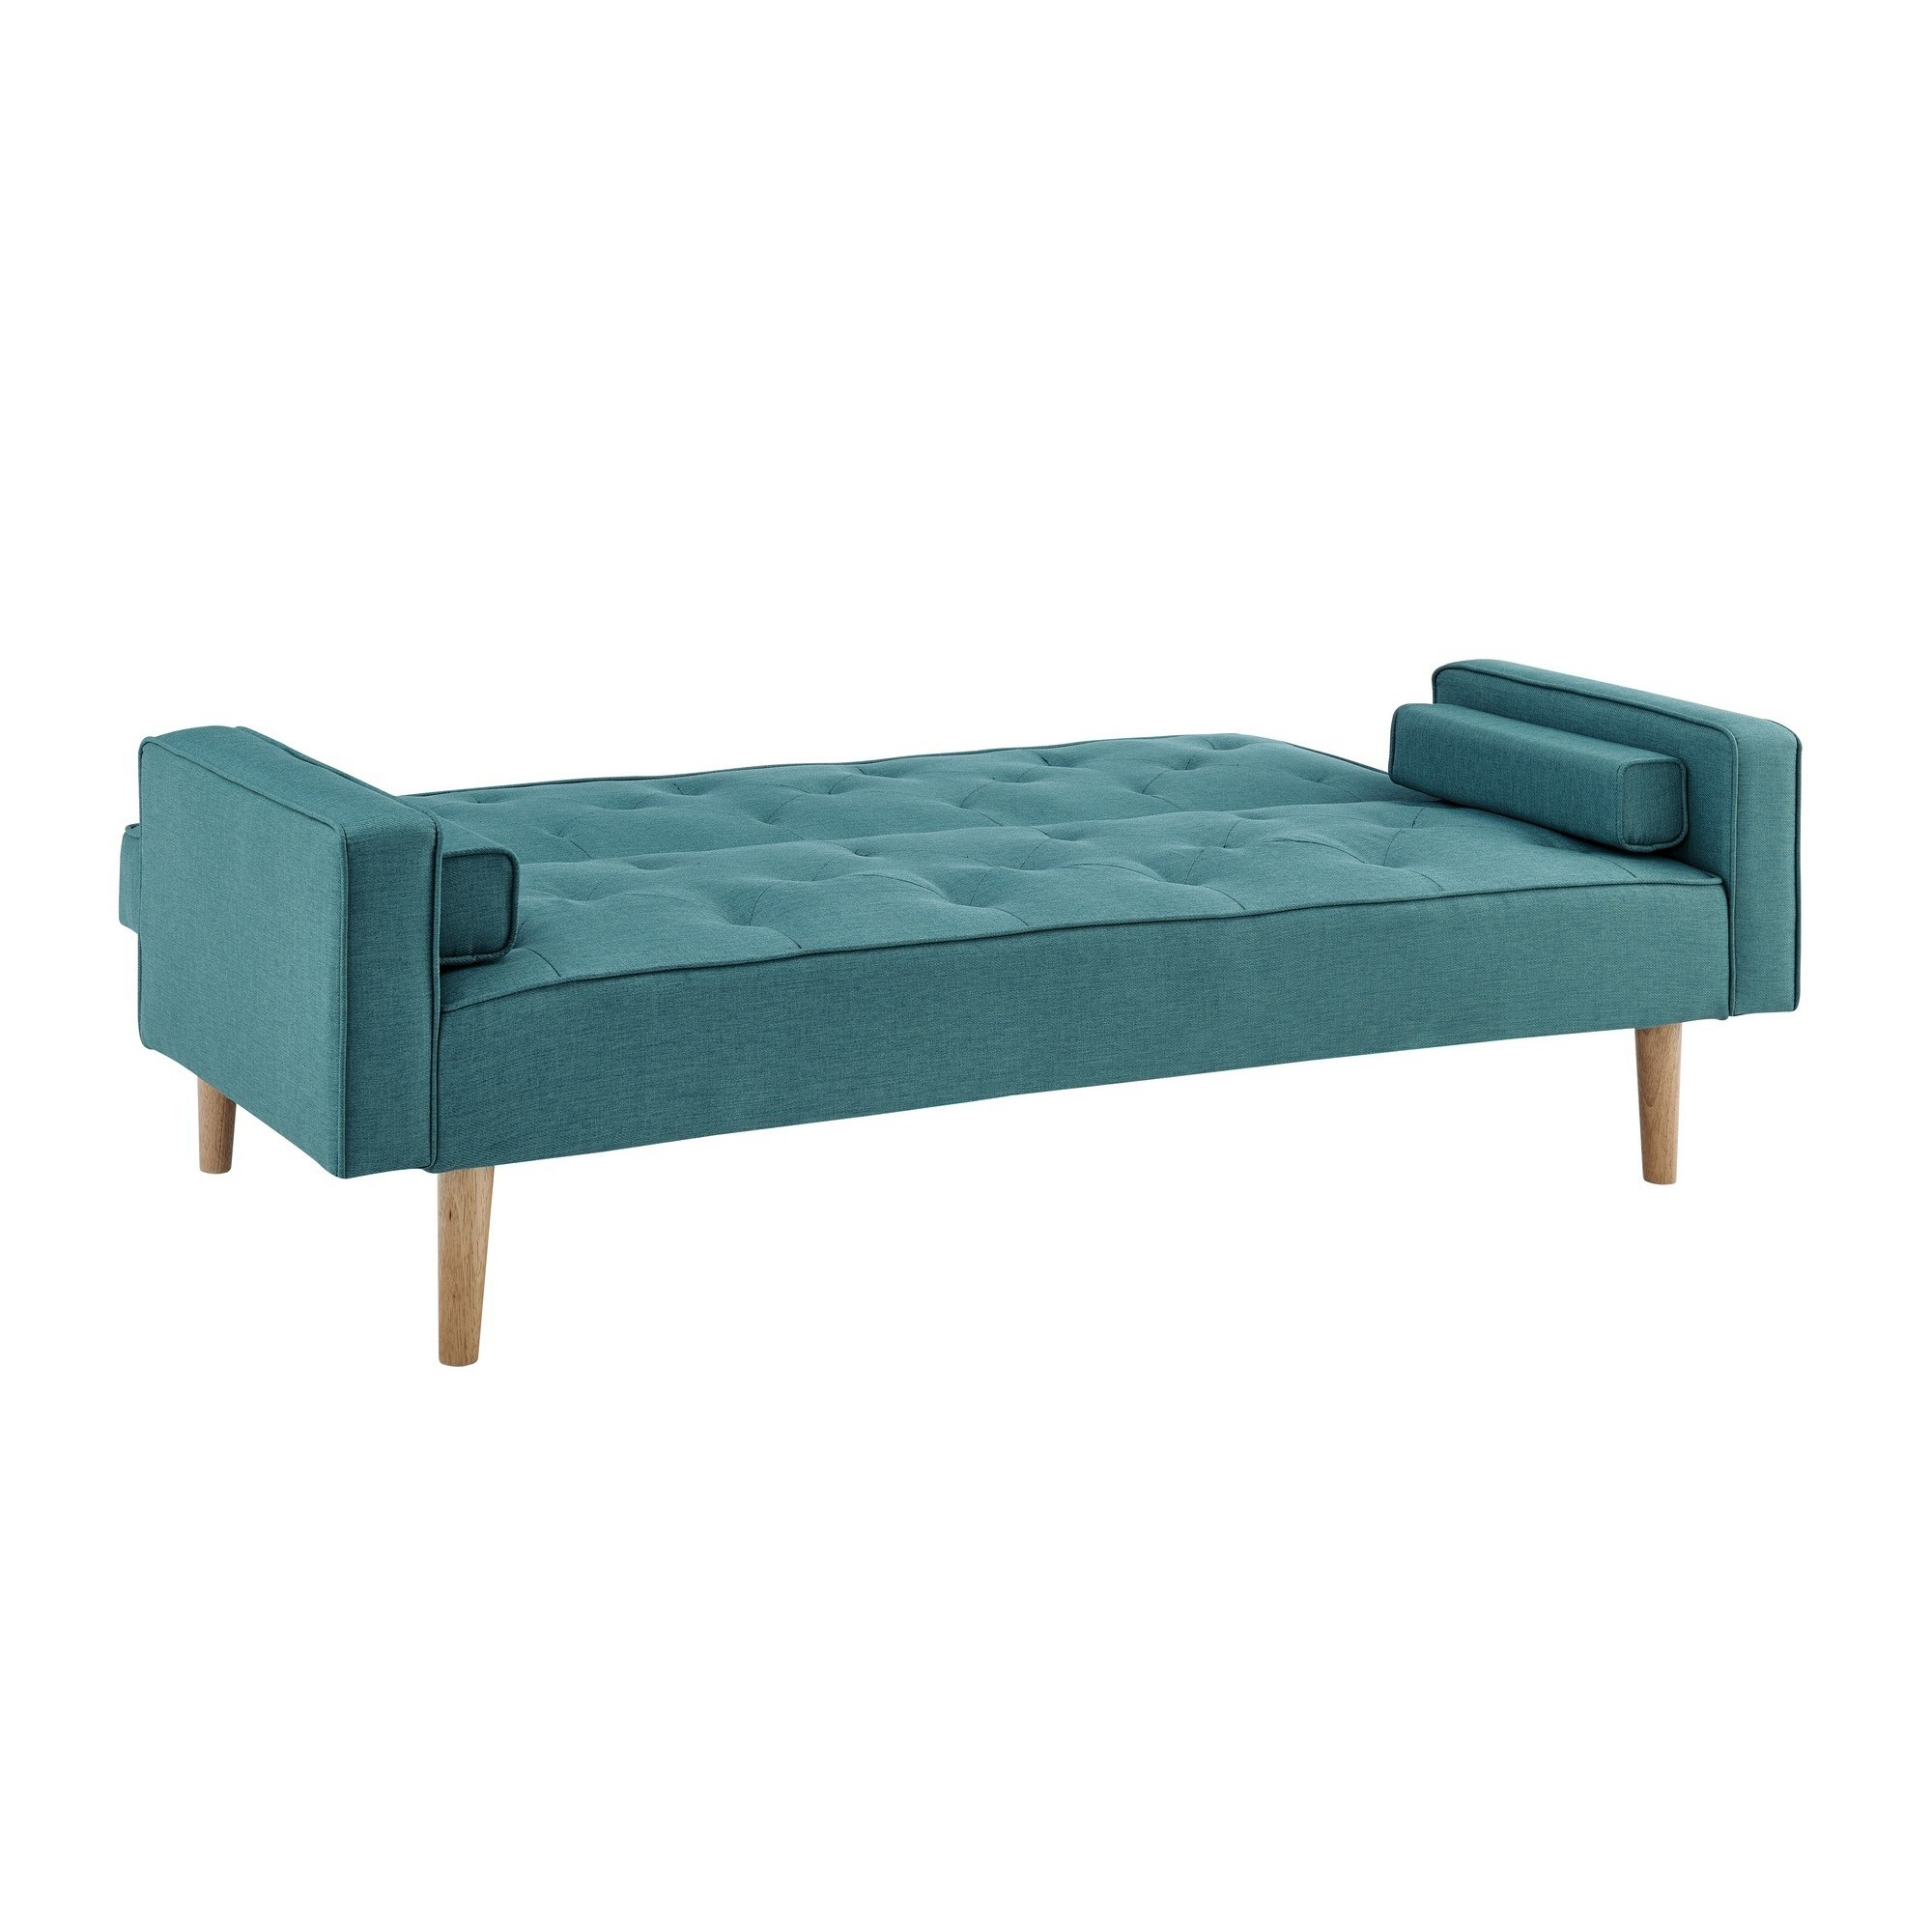 Canapé clic clac en tissu bleu avec pieds en bois